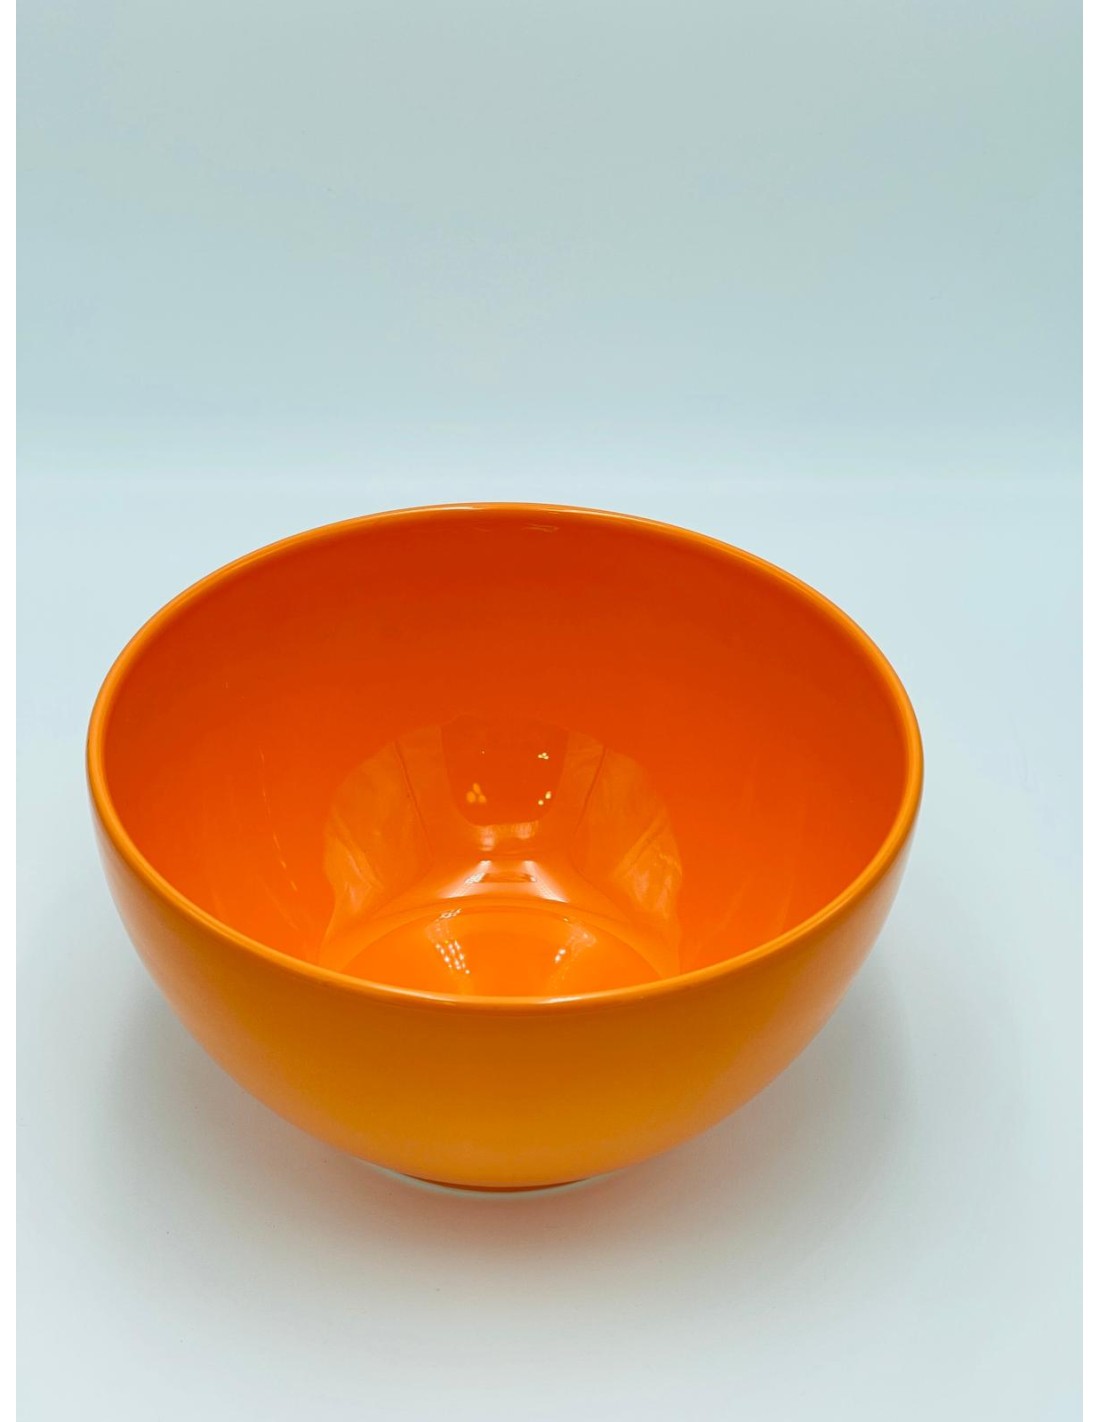 Kaleido insalatiera in ceramica porcellanata arancio